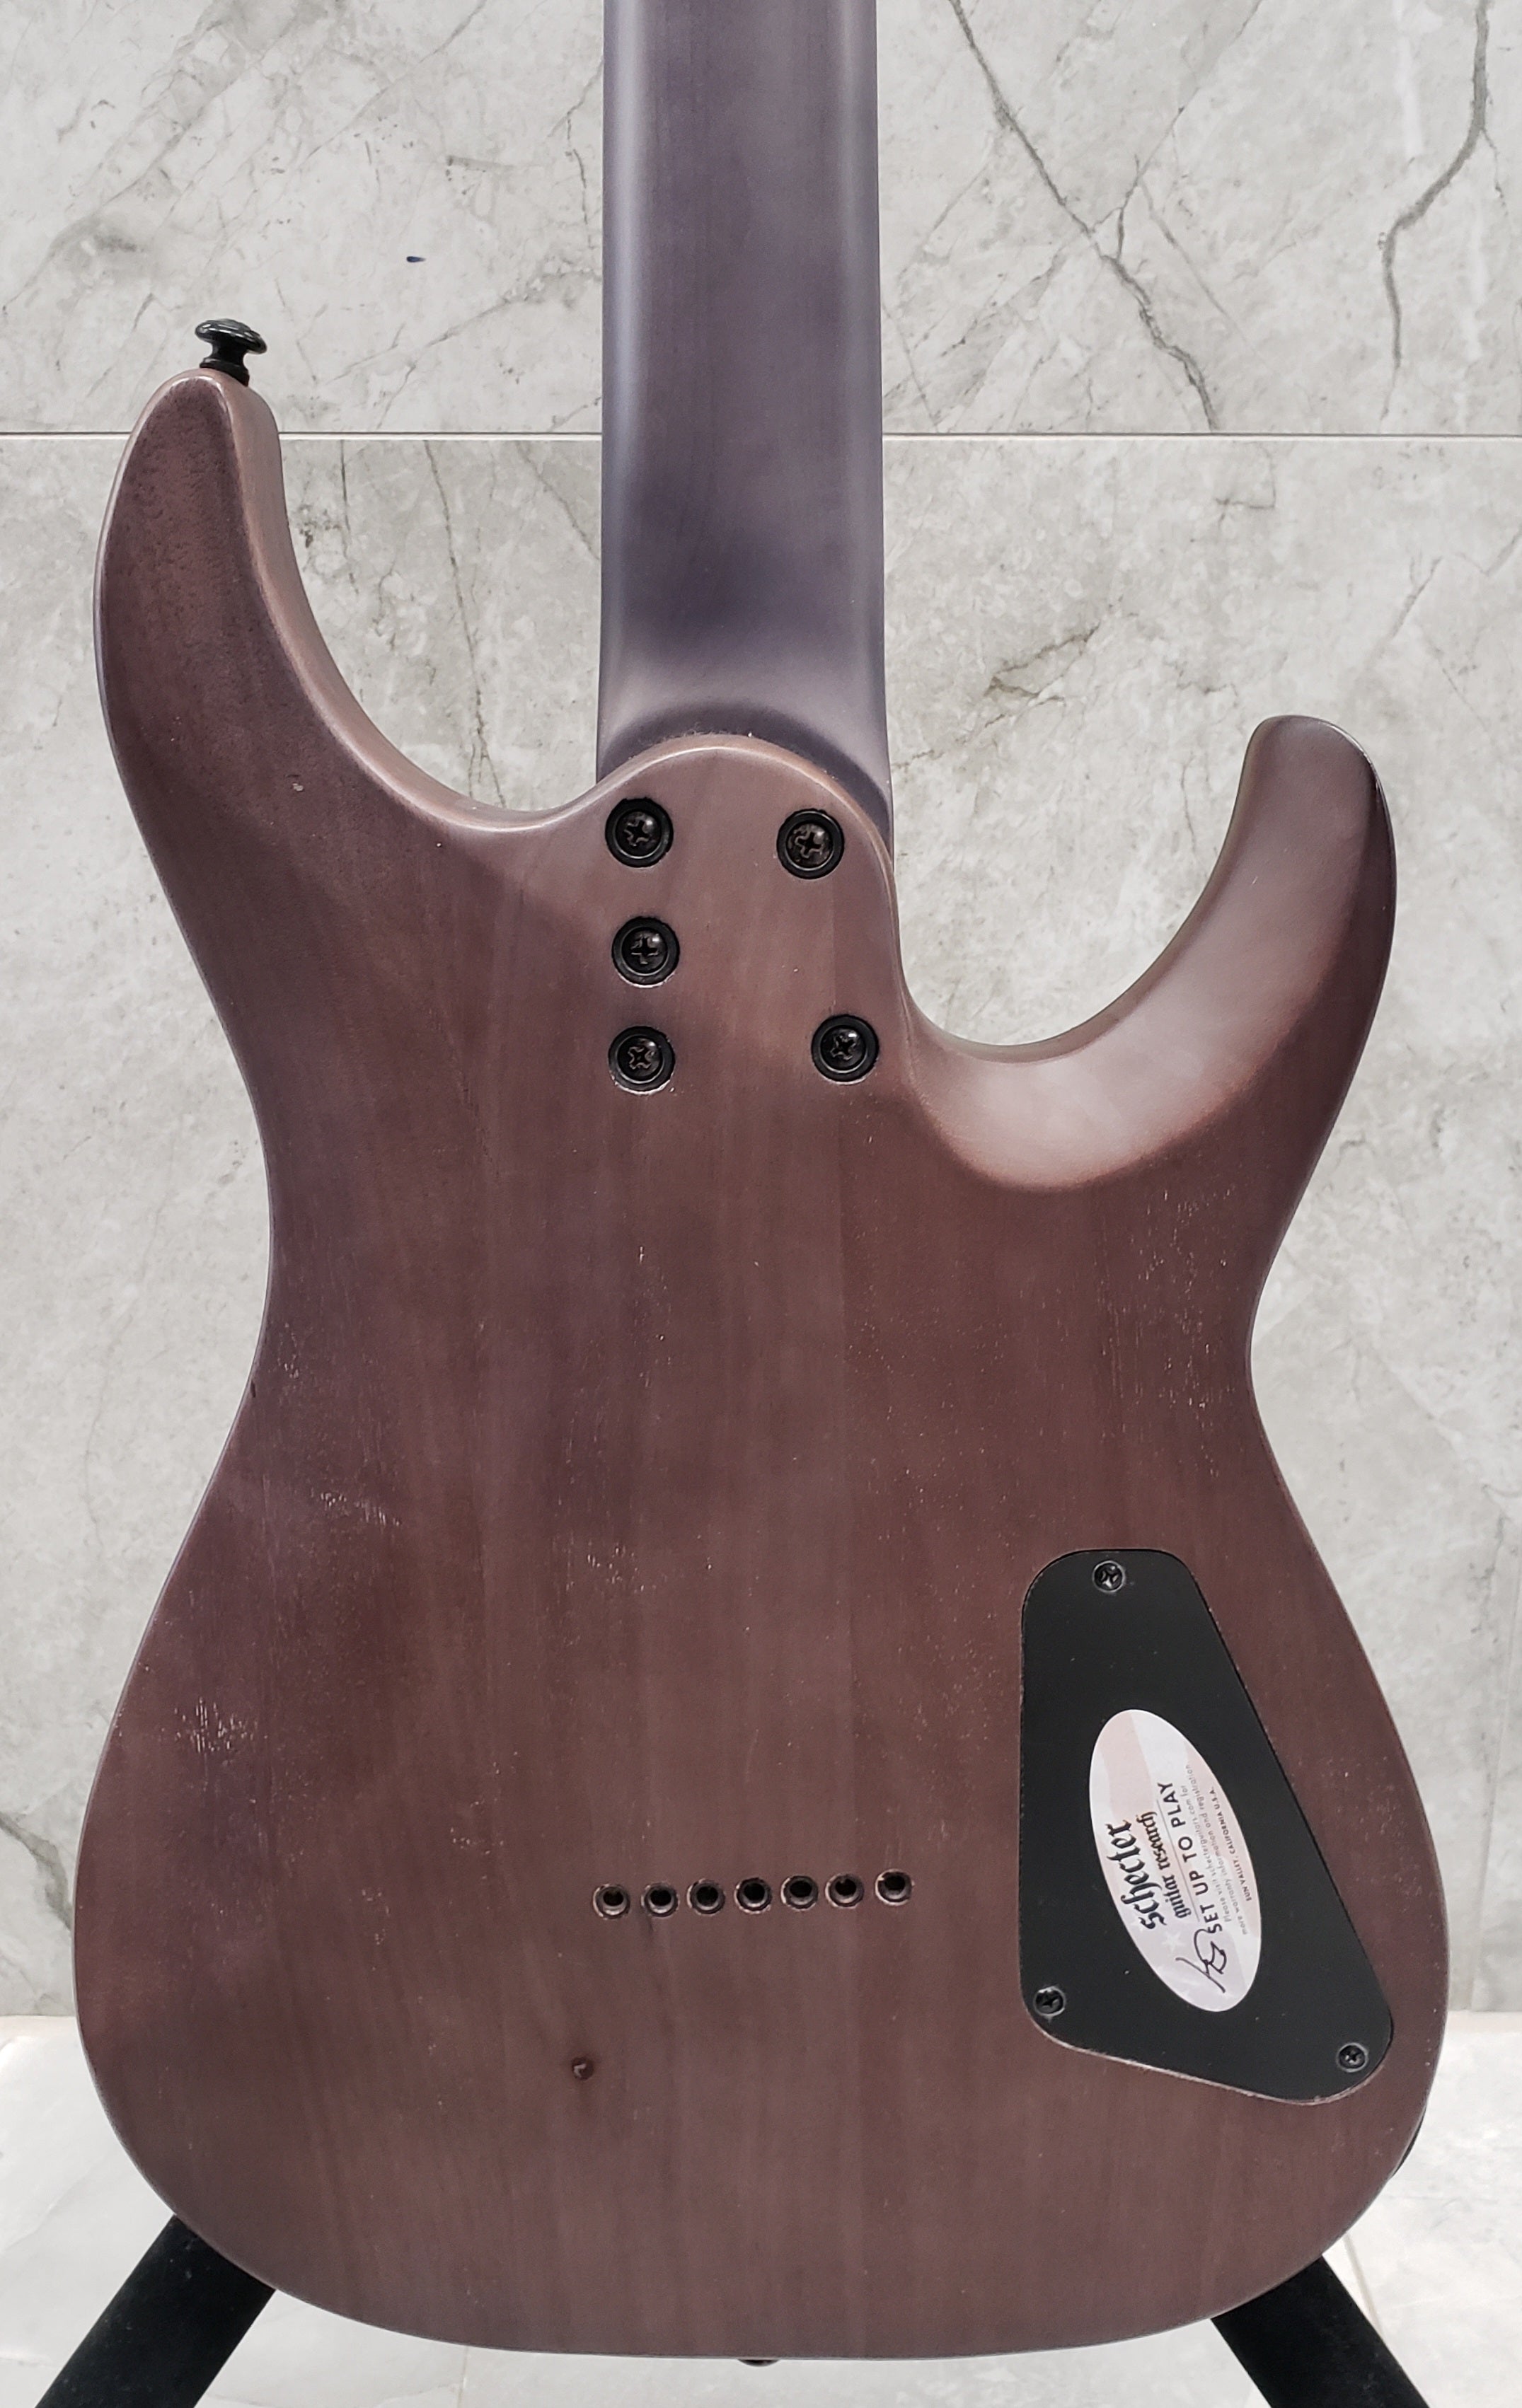 Schecter Omen Elite-7 Left Handed 7-String Electric Guitar Black Cherry Burst 2461-SHC